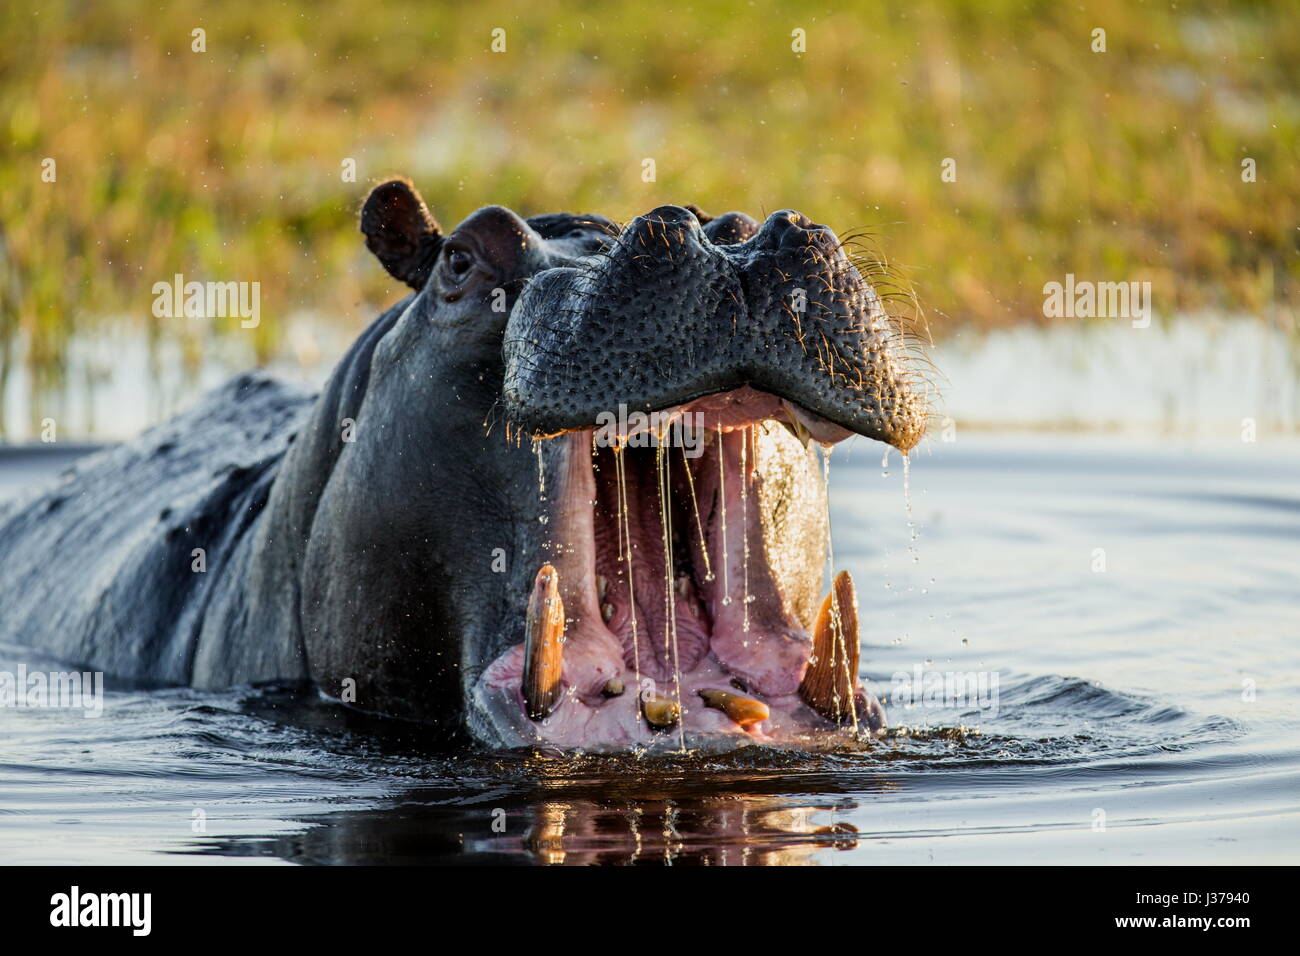 Nilpferd im Wasser sitzt, seinen Mund zu öffnen und Gähnen. Botswana. Okavangodelta. Eine hervorragende Abbildung. Stockfoto